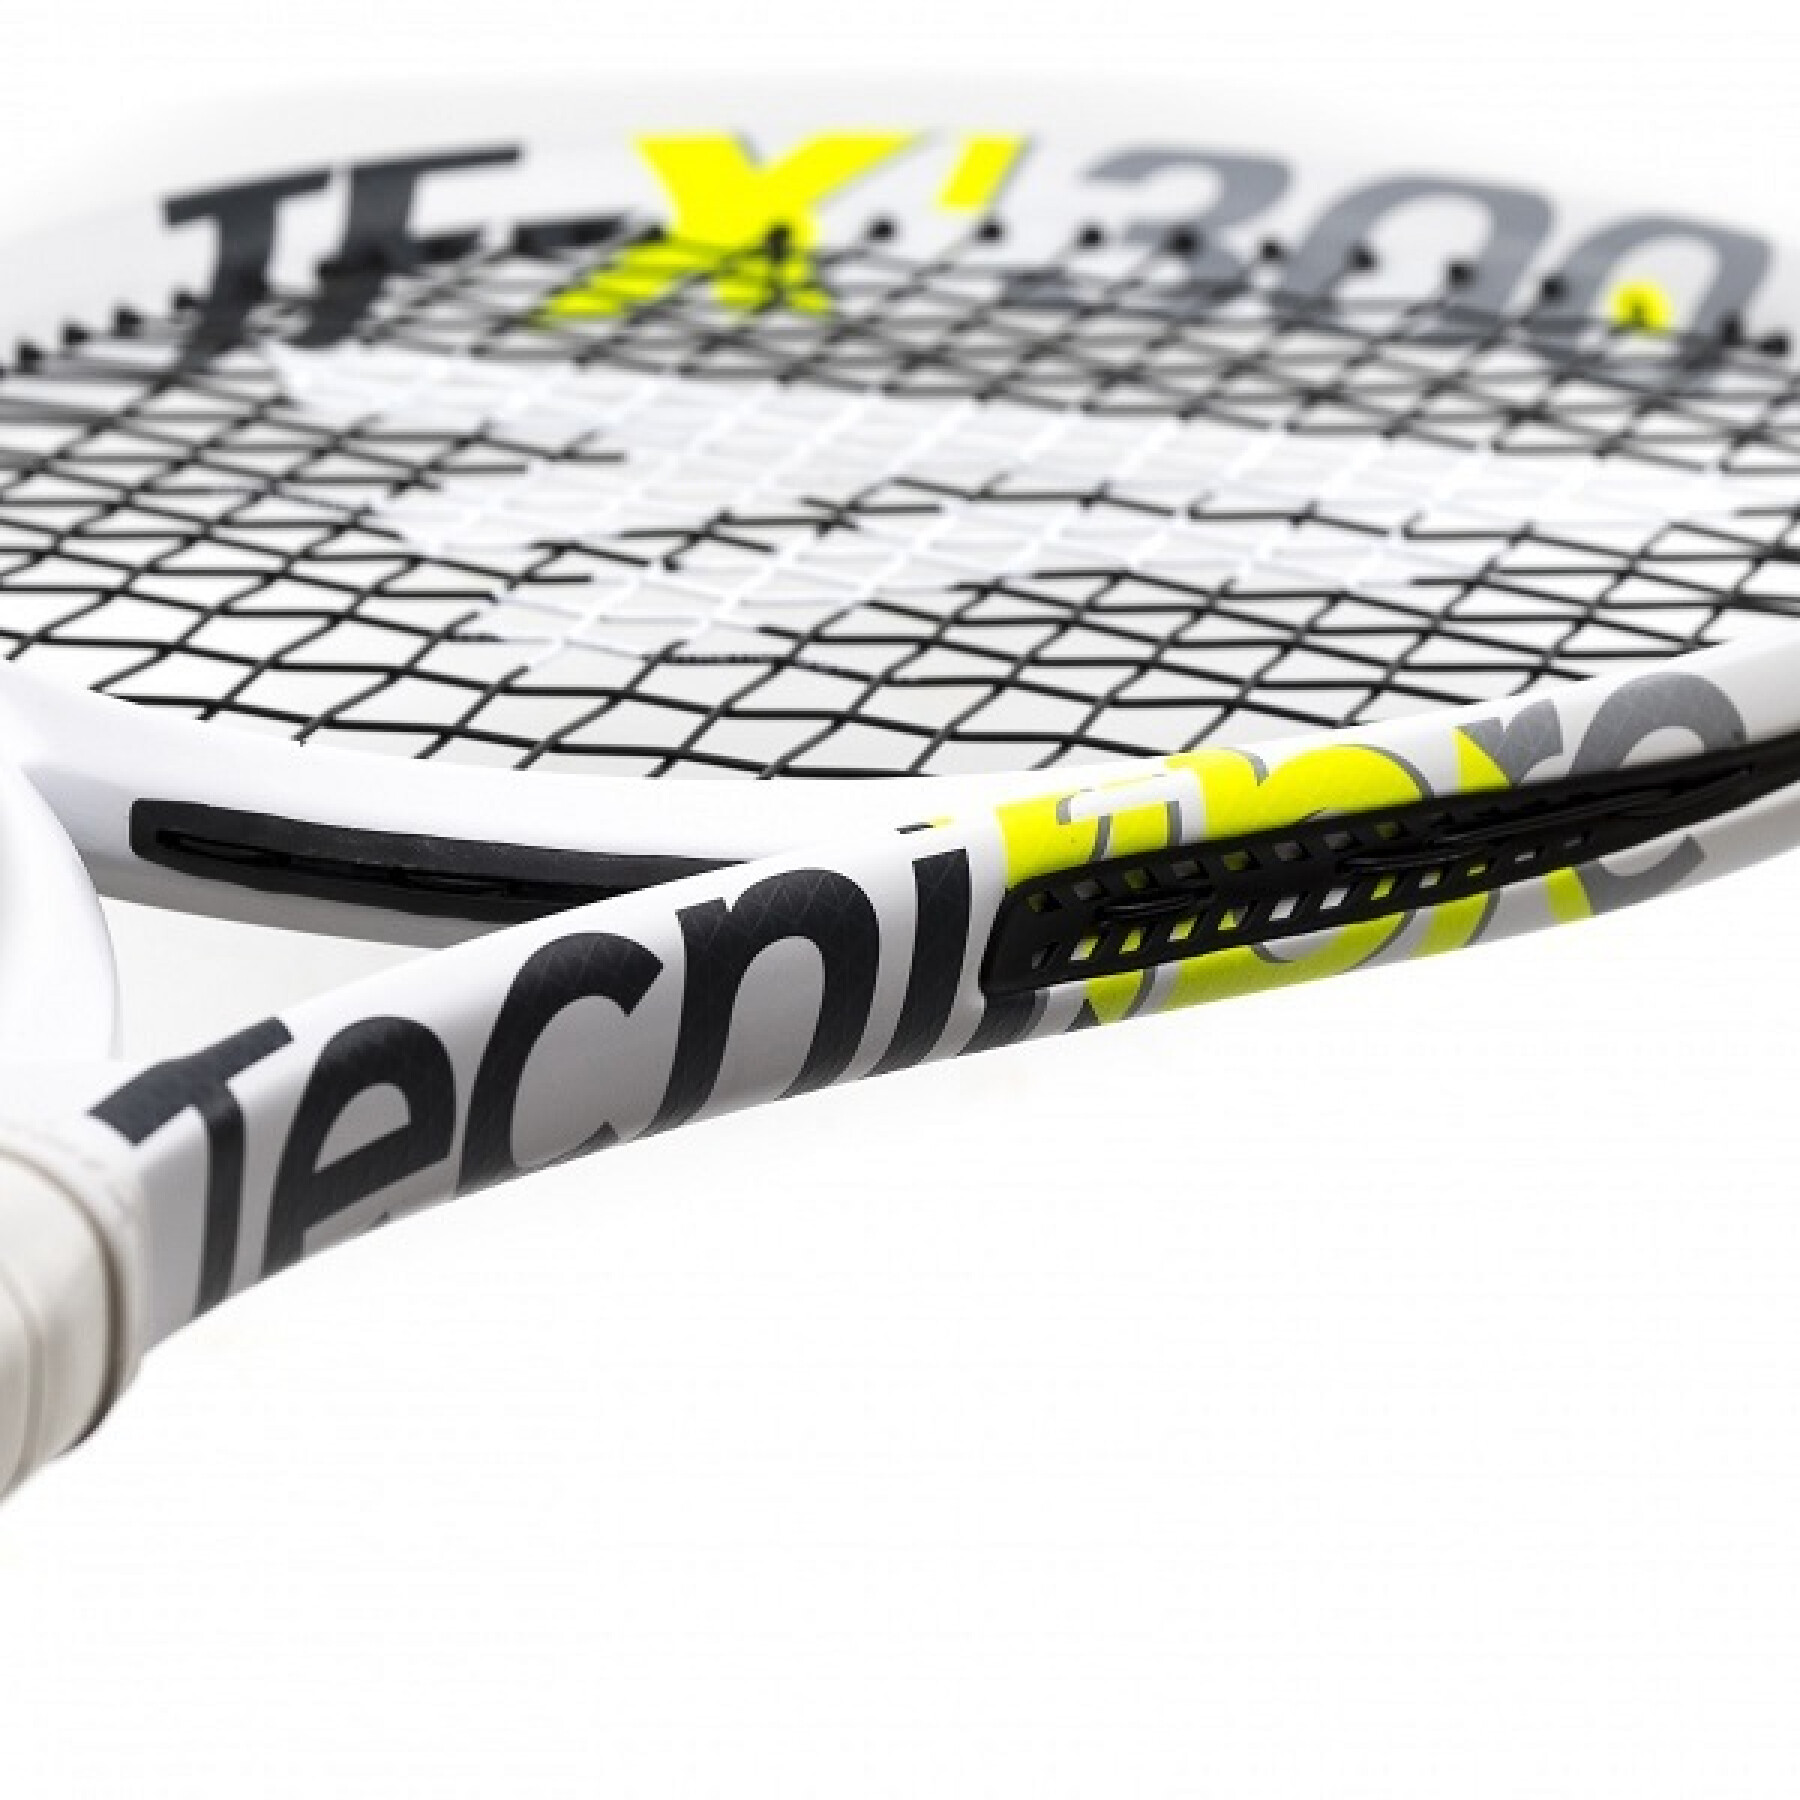 Raqueta de tenis Tecnifibre TF-X1 275 V2